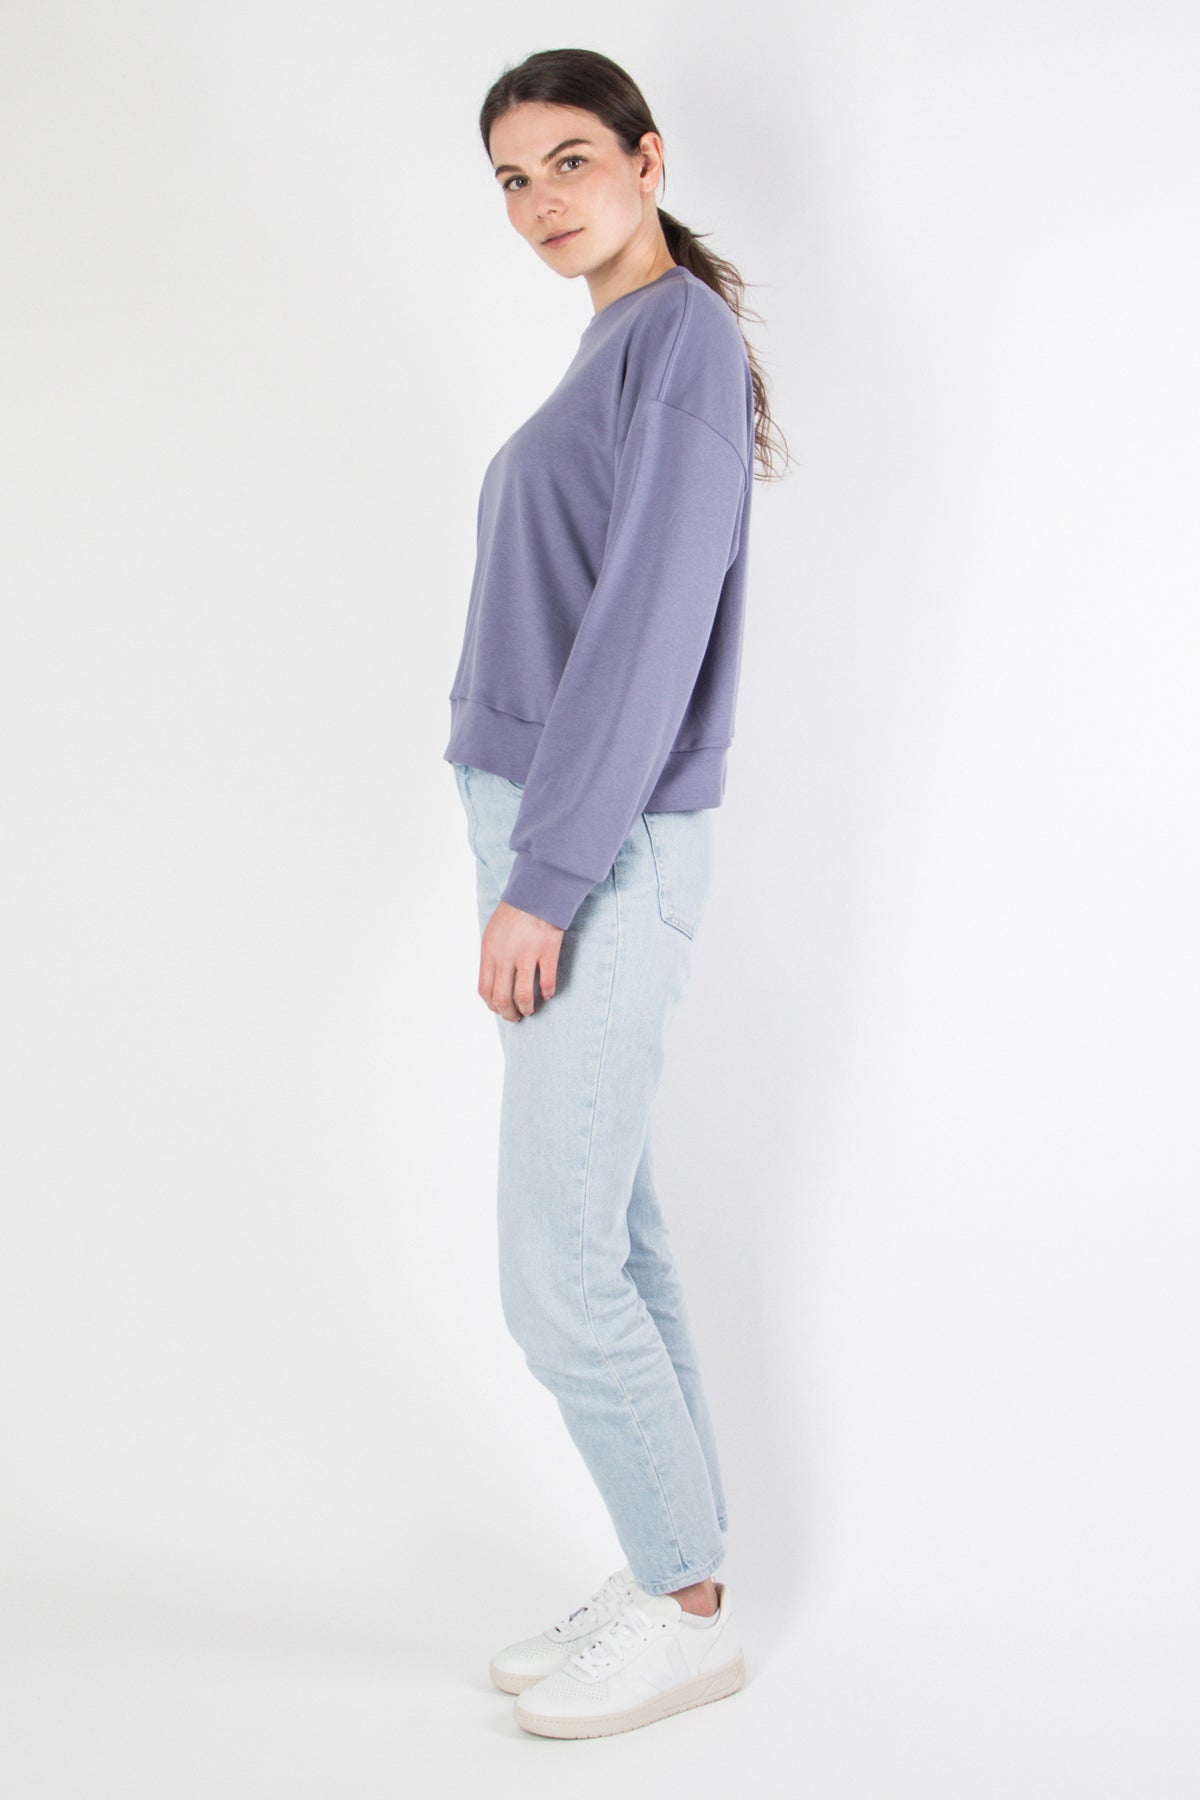 Yela Sweater Cropped - purple